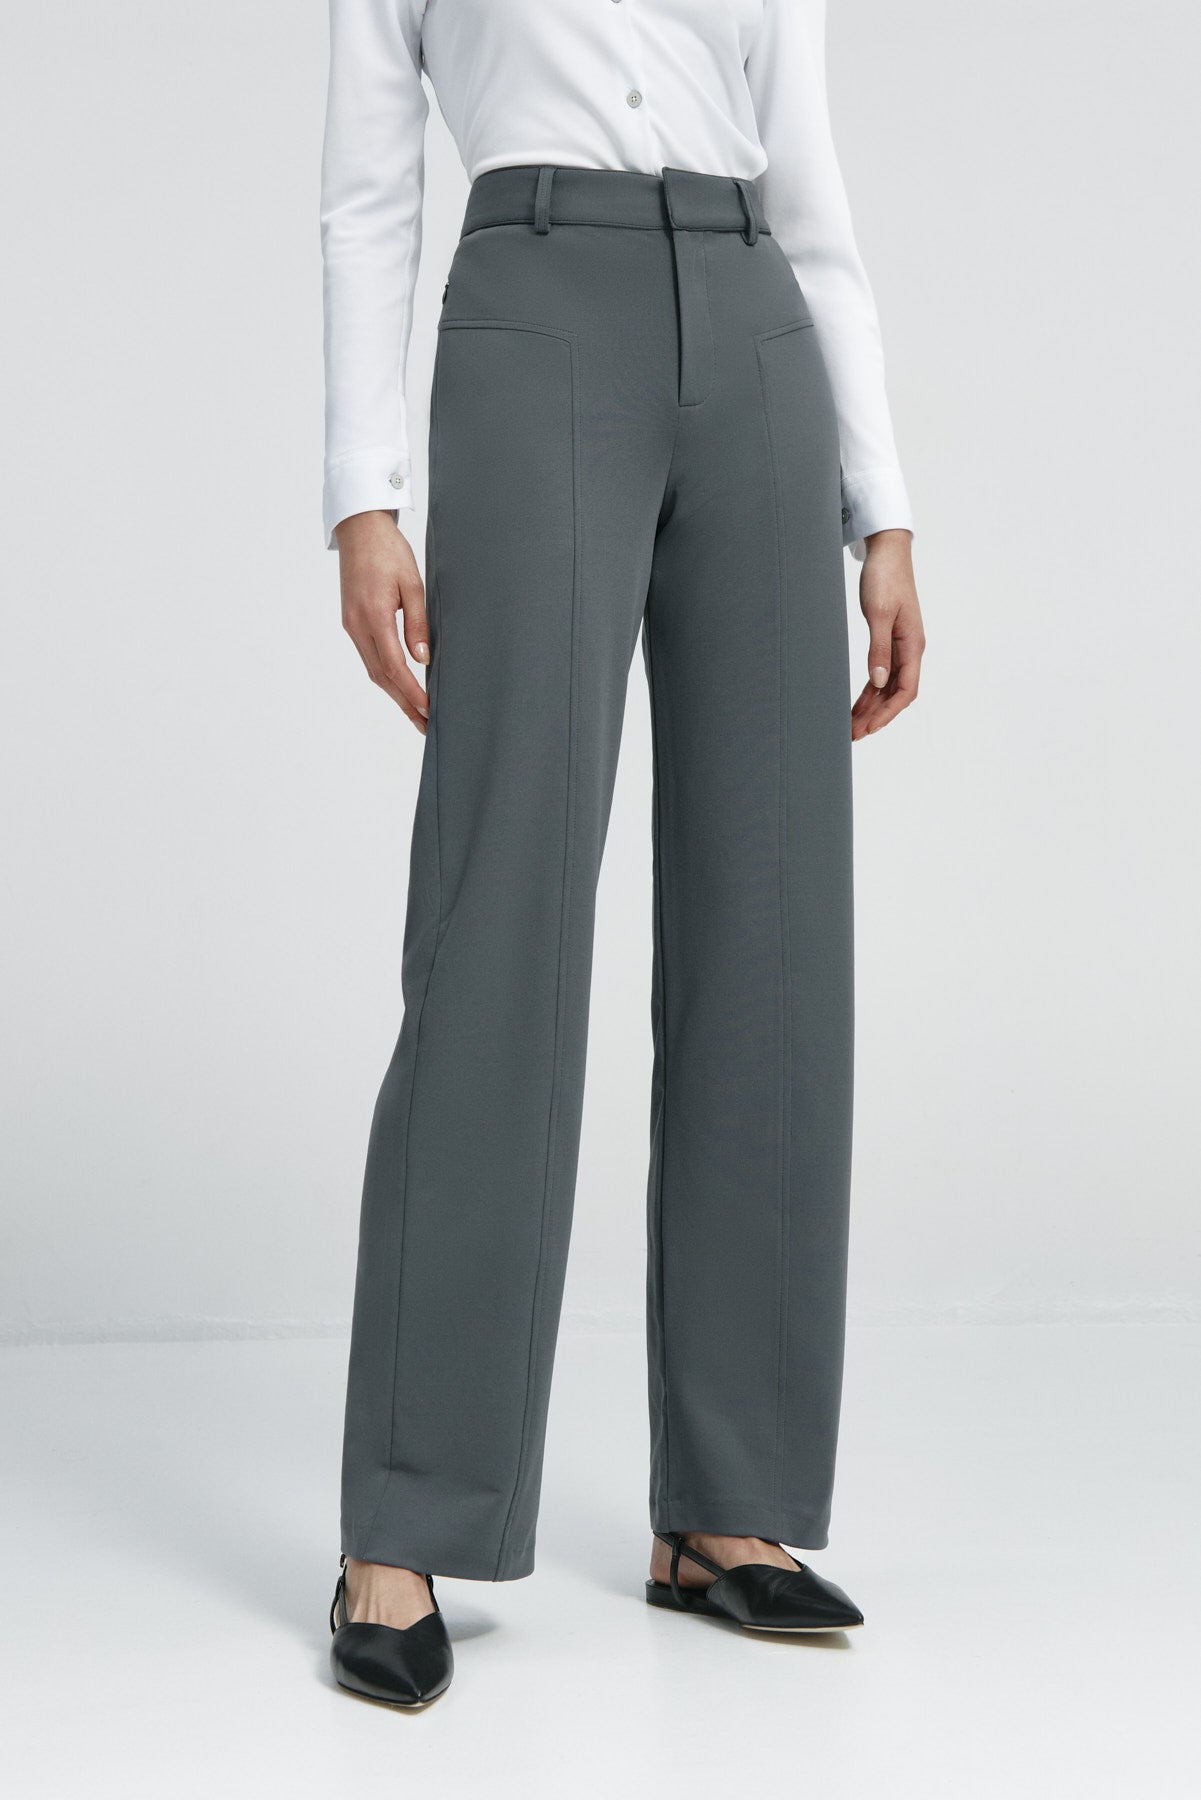 Pantalón de mujer gris de Sepiia, cómodo y resistente, ideal para cualquier ocasión. Foto frente